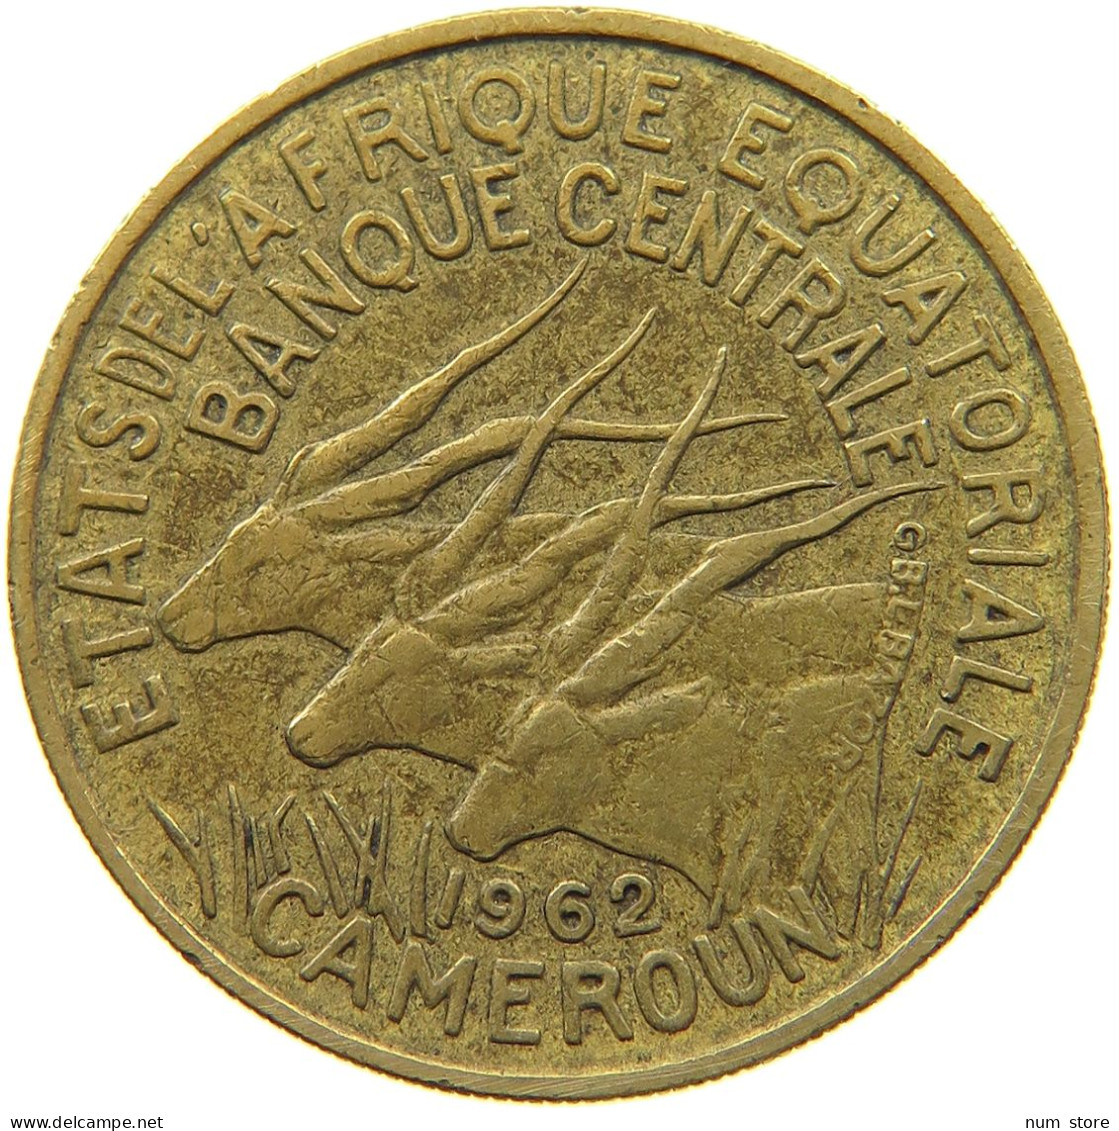 CAMEROON 25 FRANCS 1962  #a047 0091 - Cameroon